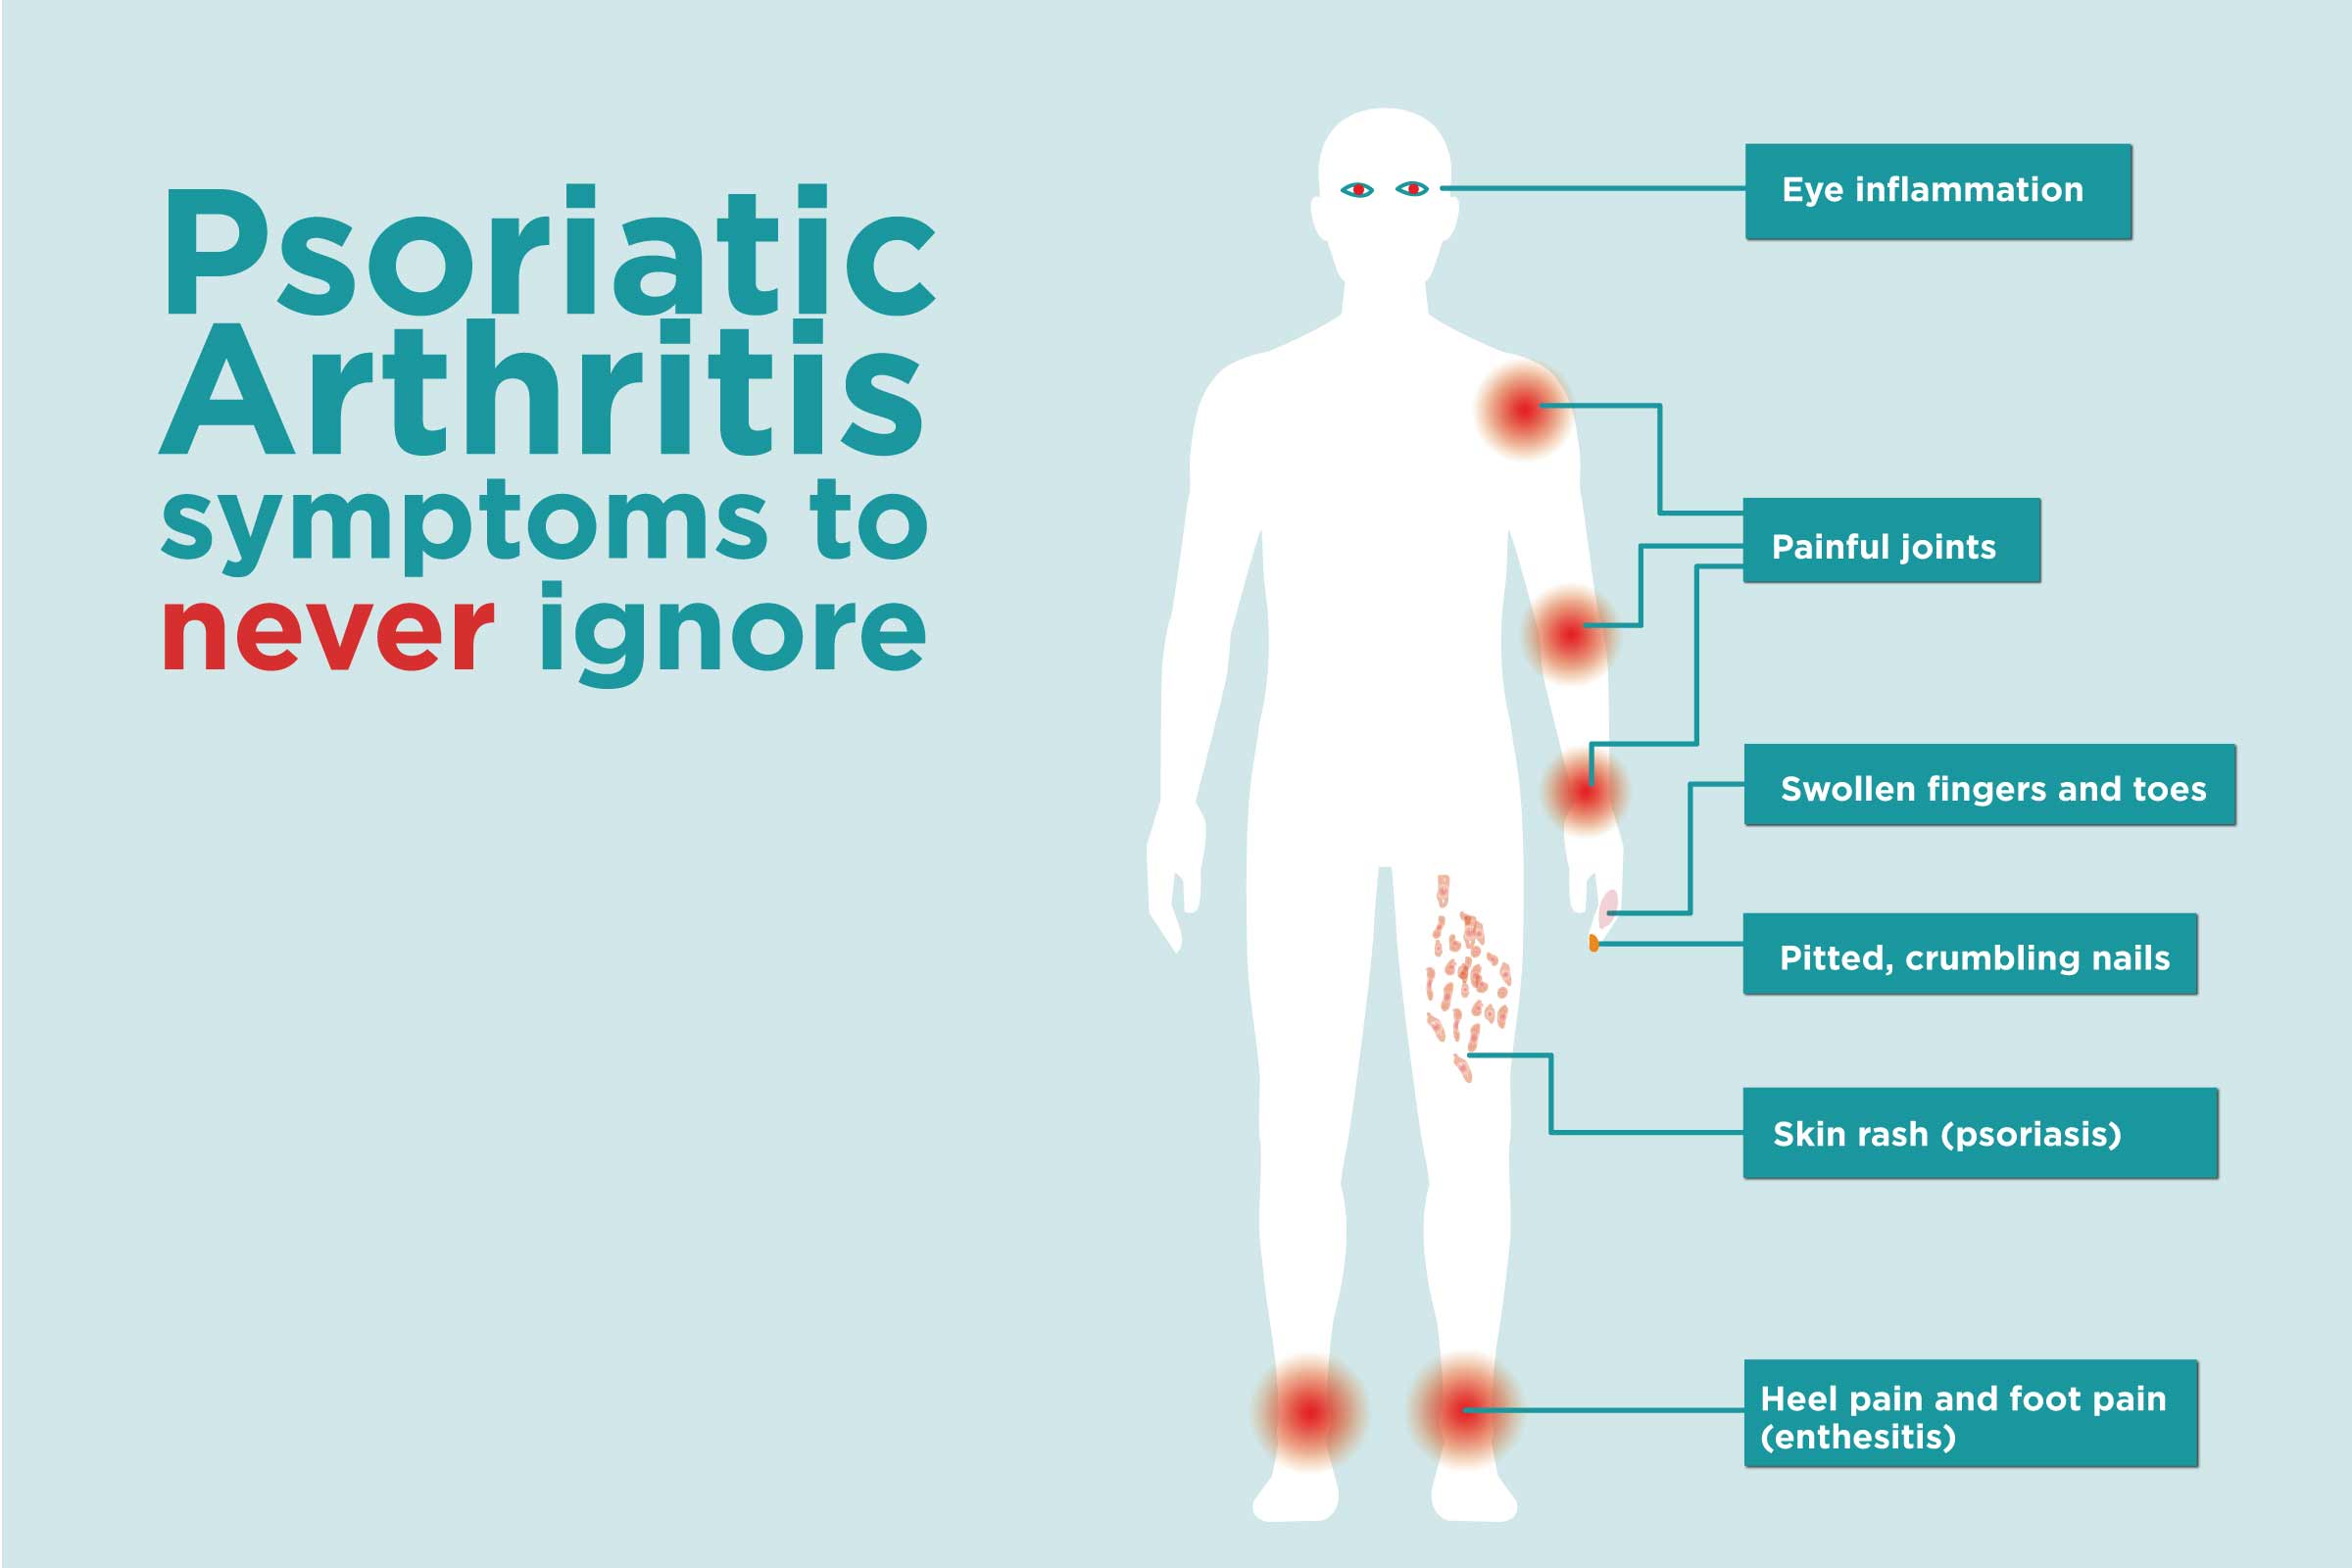 Psoriatic Arthritis symptoms